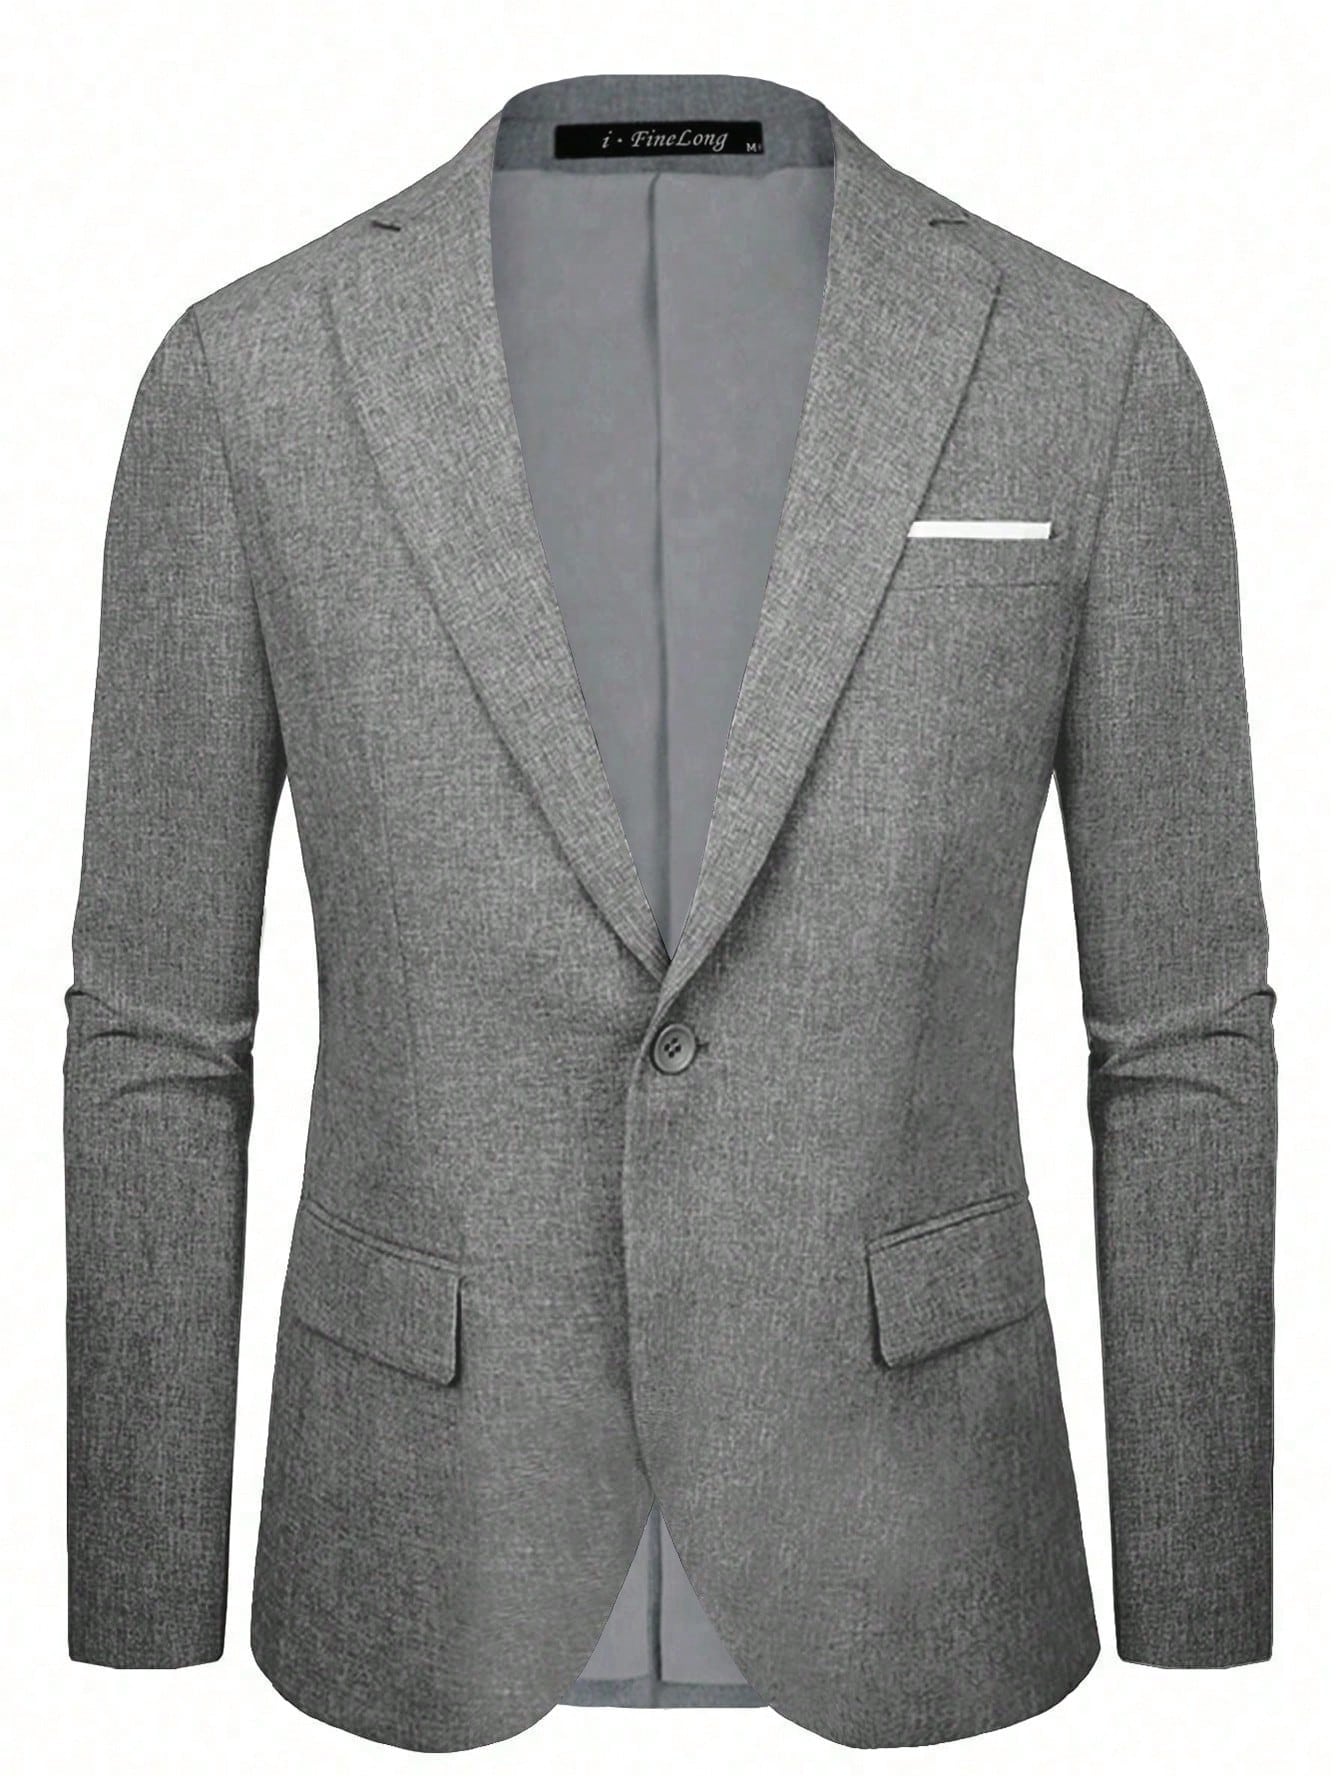 Мужской пиджак на одной пуговице, серый мужской деловой приталенный пиджак на одной пуговице деловой пиджак lars amadeus